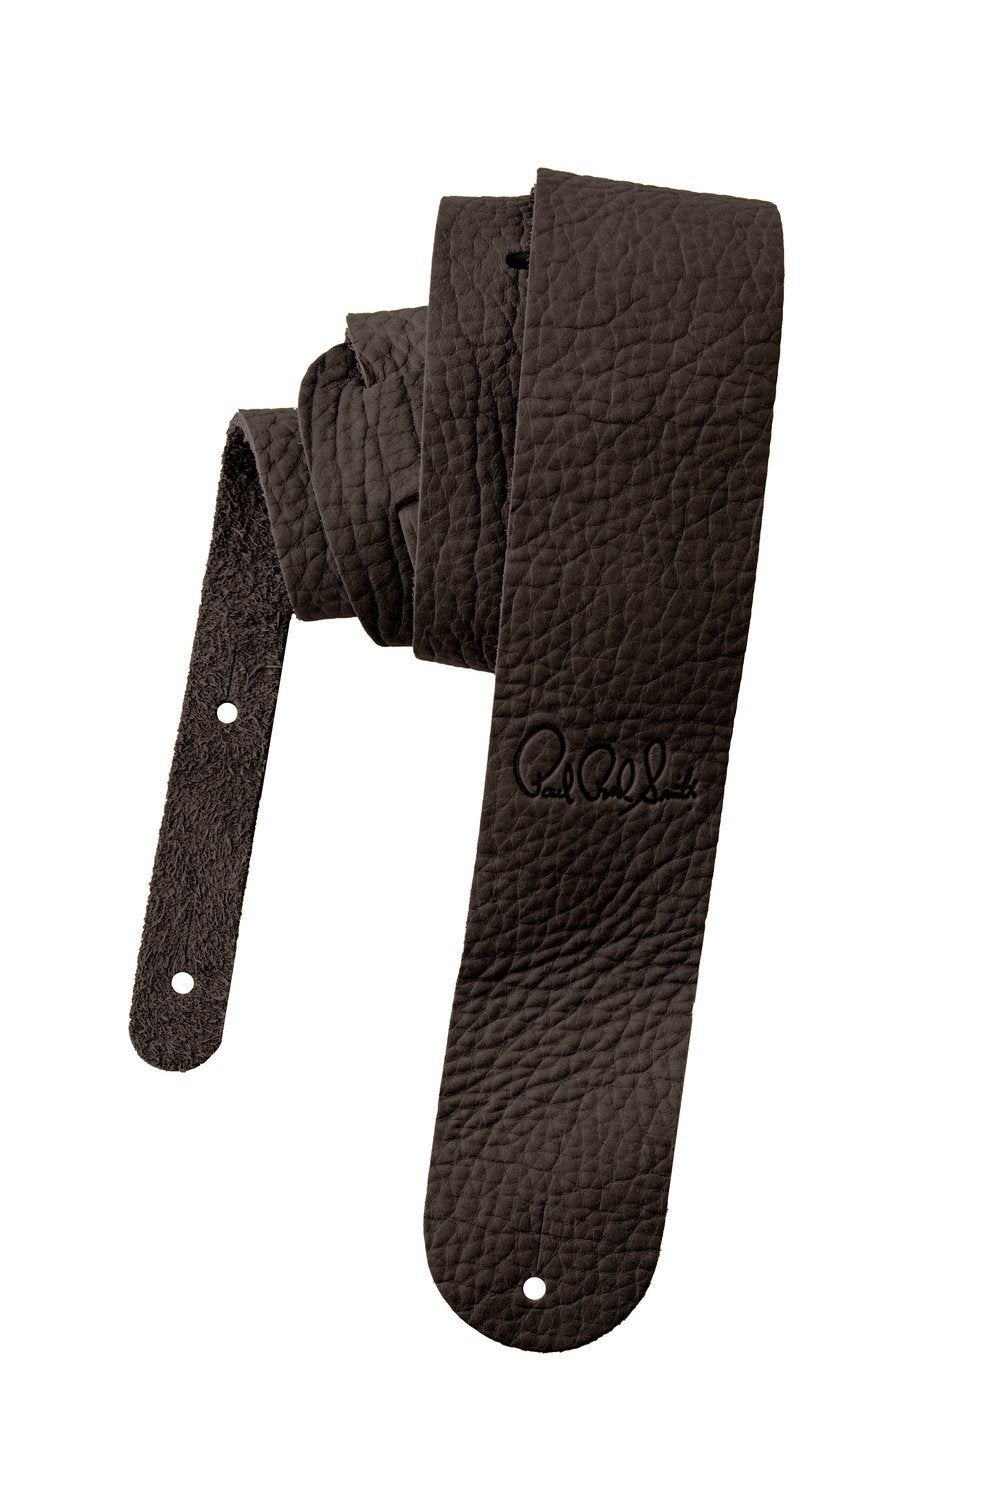 PRS 2.5" Buffalo Leather Strap - HIENDGUITAR Dark Brown Dark Brown PRS Straps